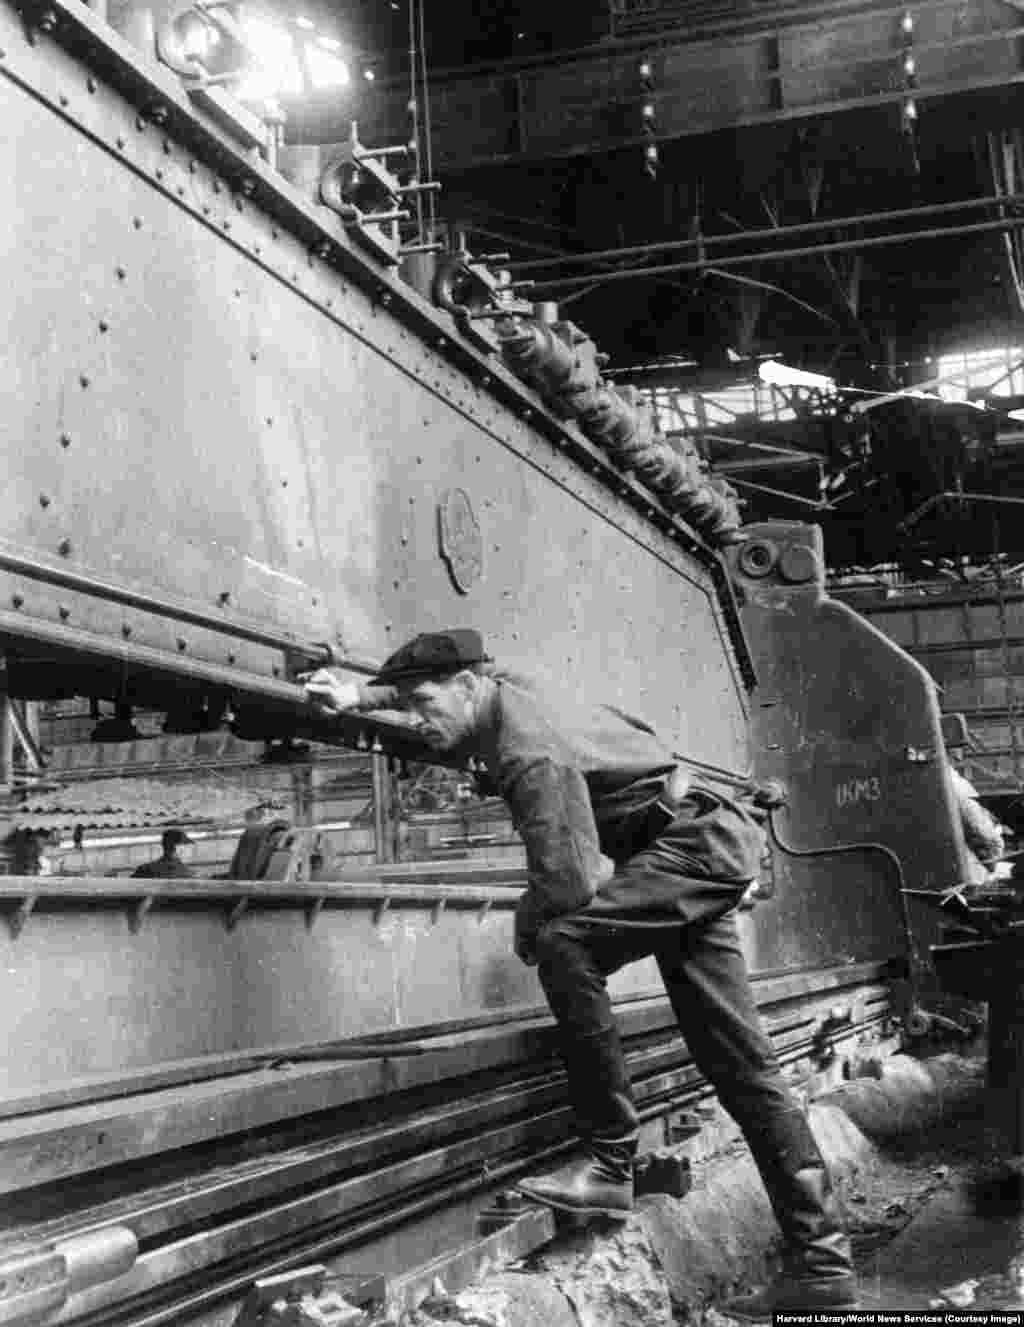 Кінець 1940-х років. Механік перевіряє монтаж важкої техніки під час відбудови машинобудівного заводу імені Сталіна в Краматорську. Згідно з розсекреченим звітом ЦРУ&nbsp;від 1952 року, підприємство було &laquo;на 80 відсотків зруйноване під час війни&raquo;. Воно відновило повну роботу в травні 1949 року